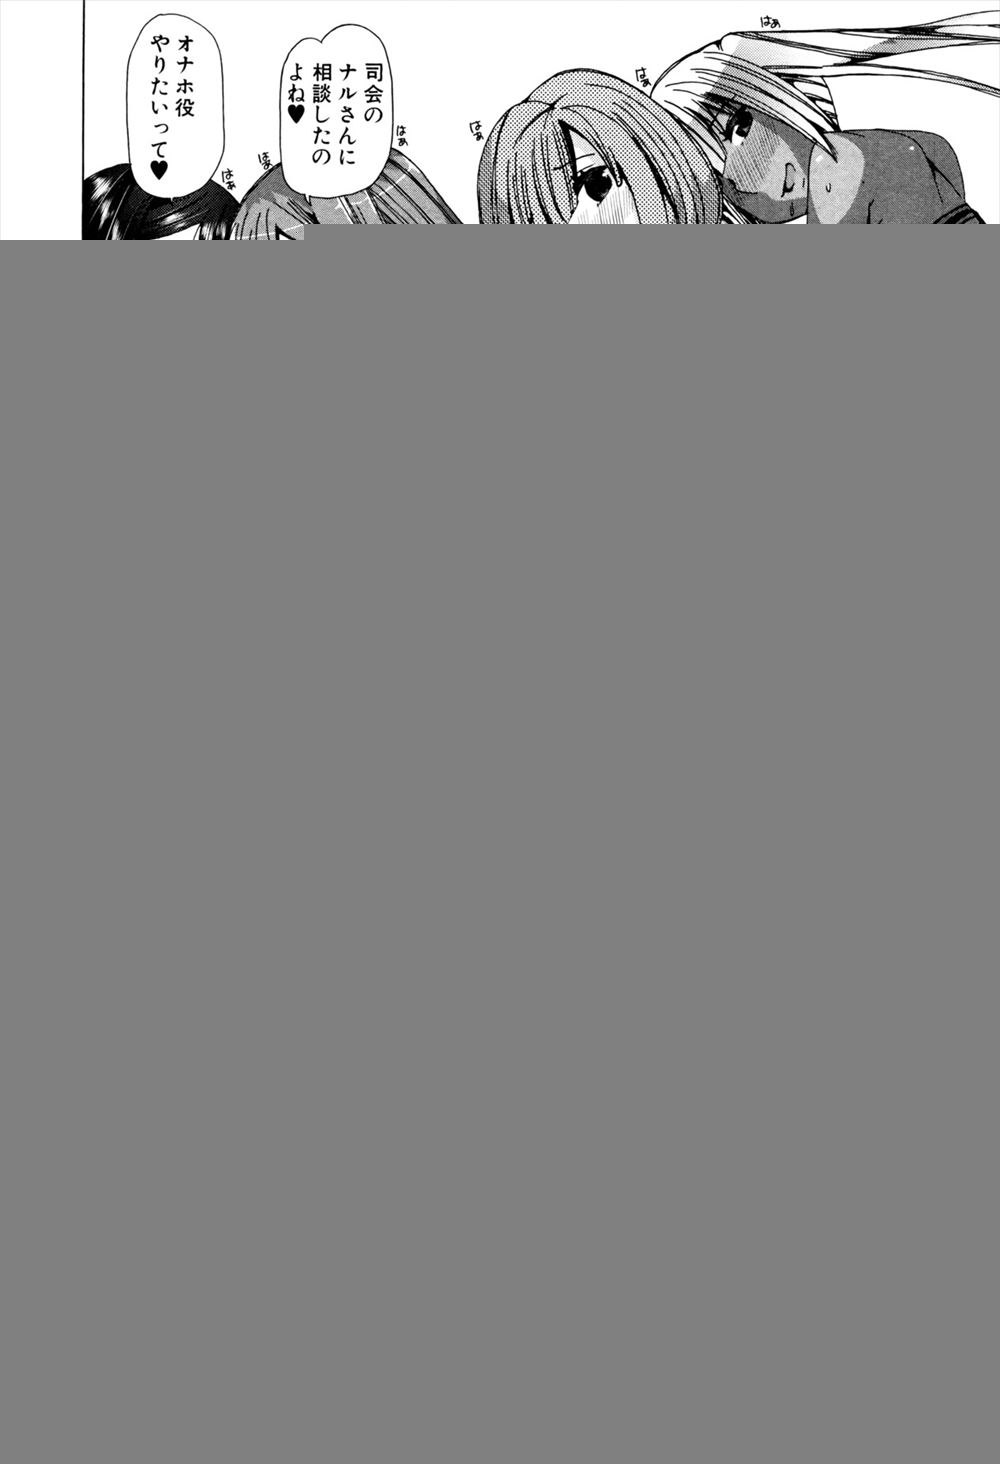 【エロ漫画・同人誌】動物とオナホの交尾する様子を放映する番組に自分たちからオナホ役として出演して色々な動物と交尾する4姉妹のアイドルｗｗｗ 012